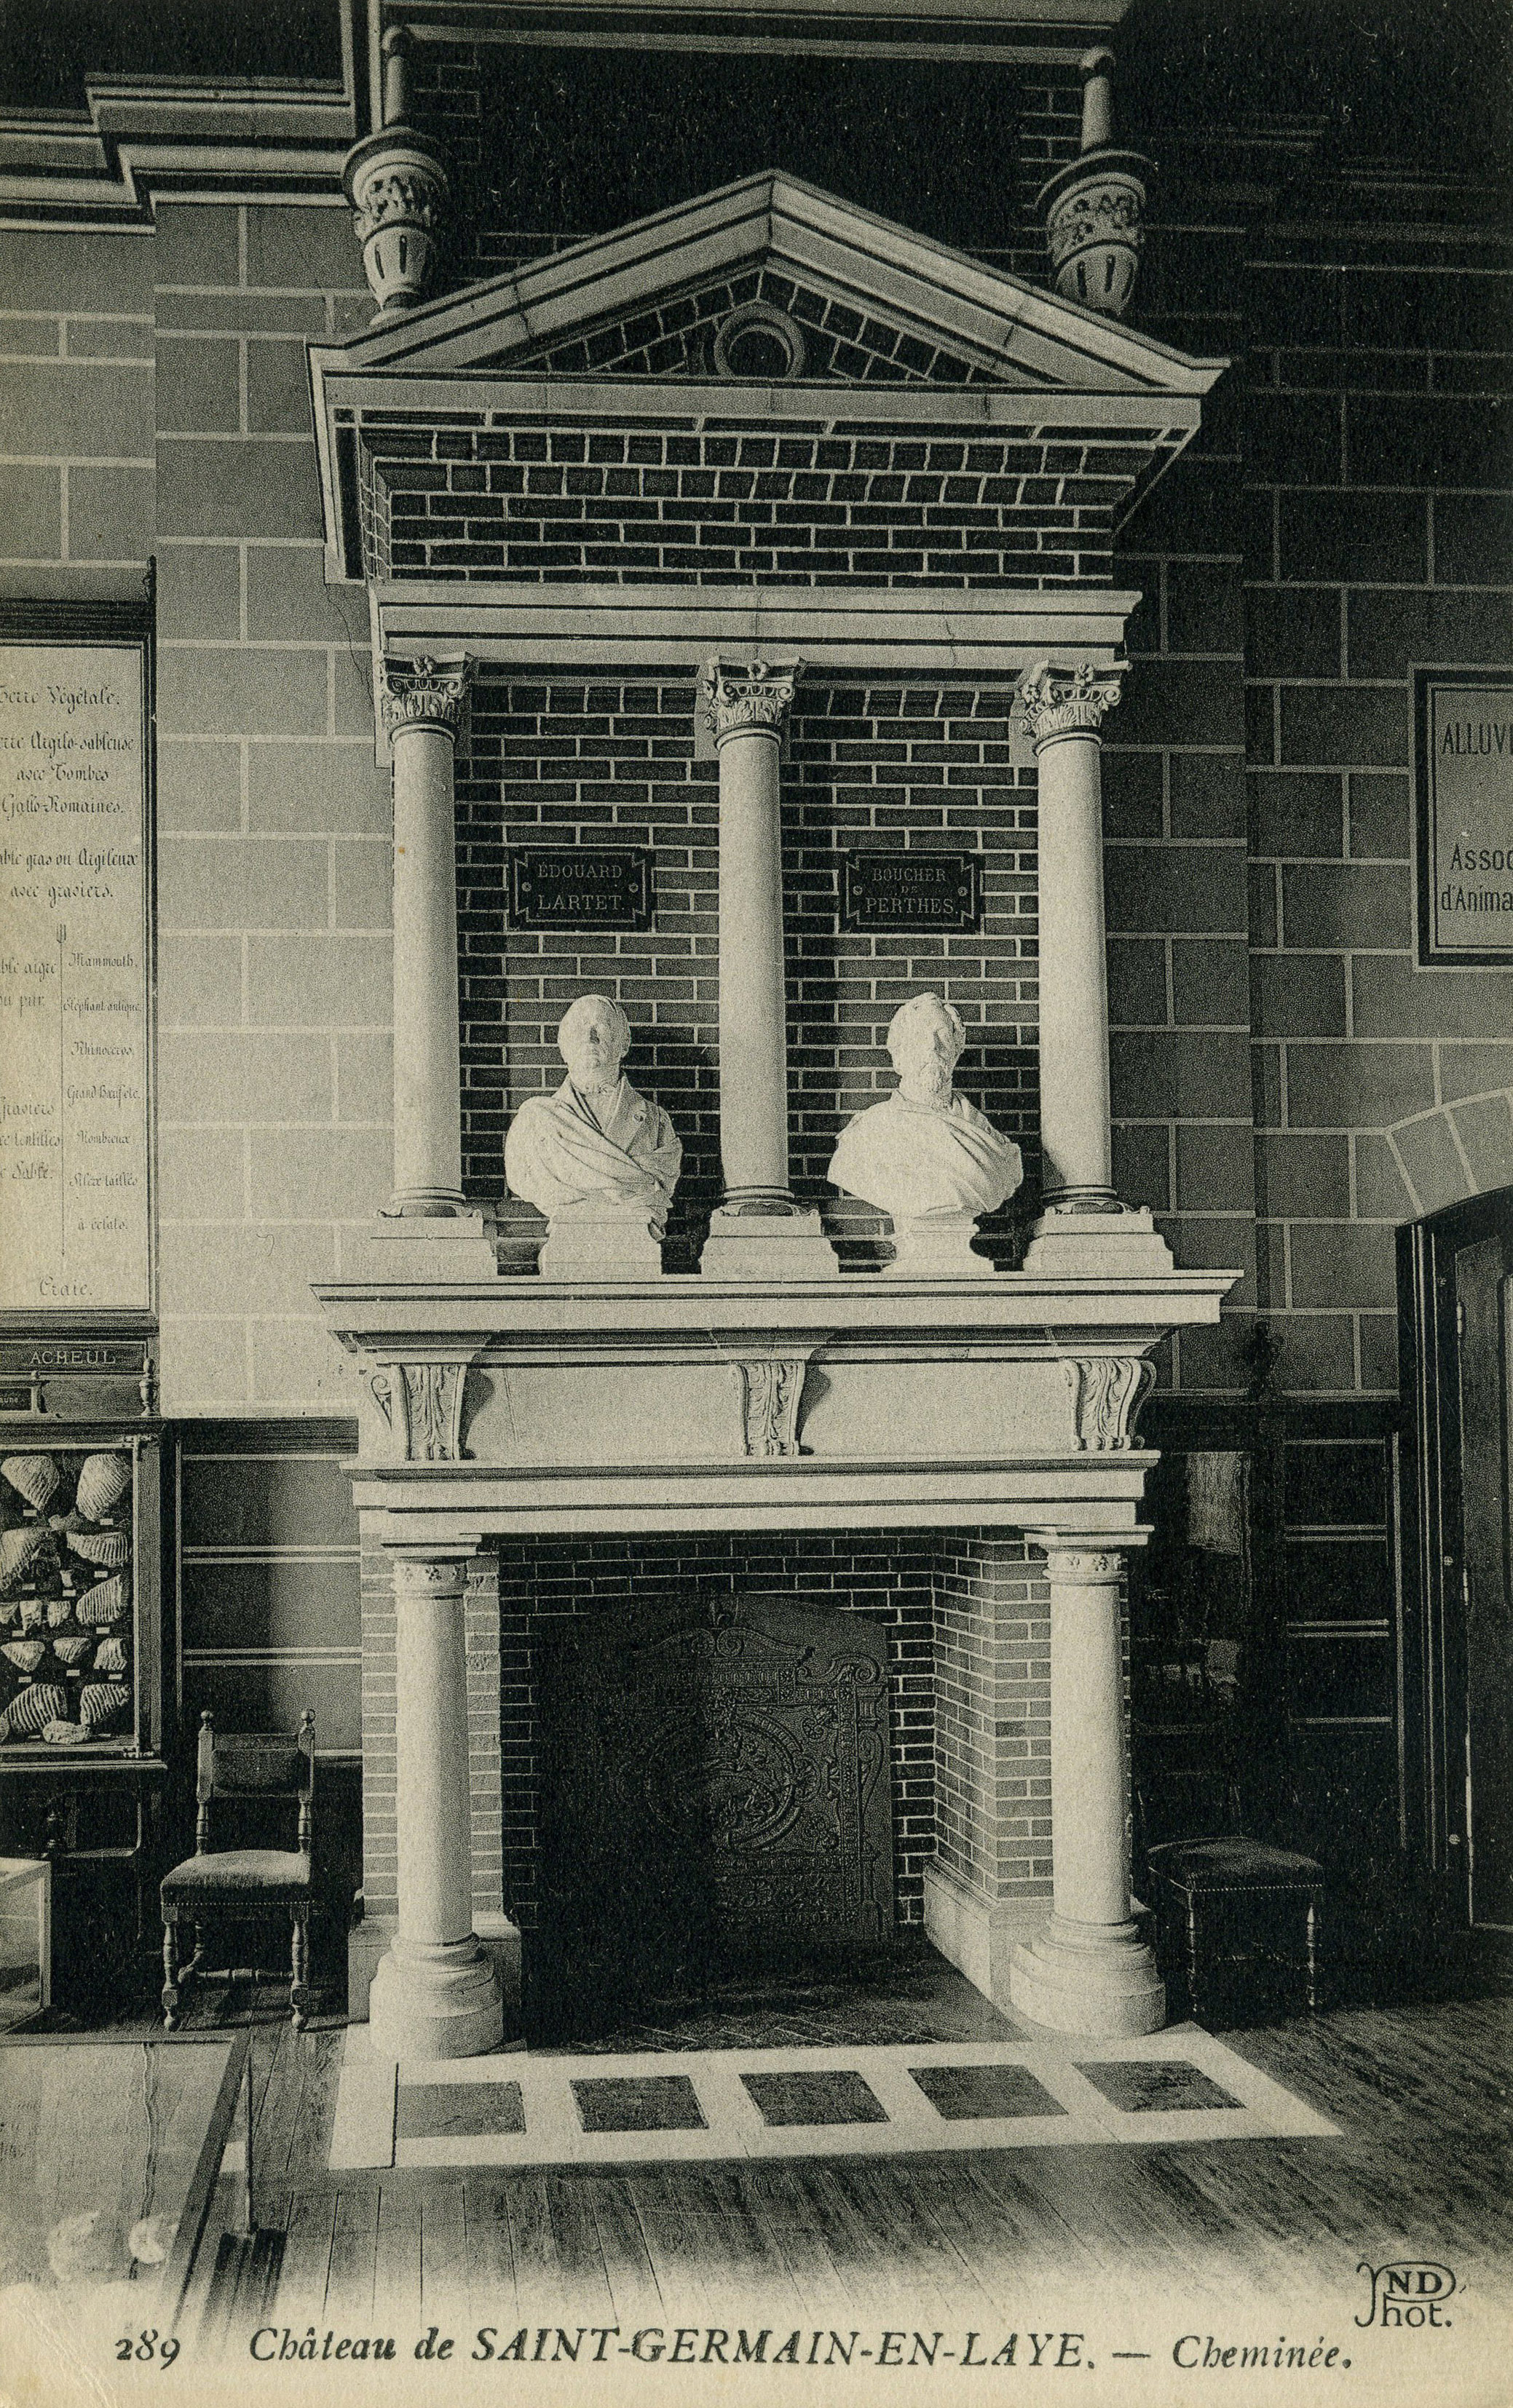 La cheminée,les bustes de Lartet (à gauche) et de Boucher de Perthes (à droite).